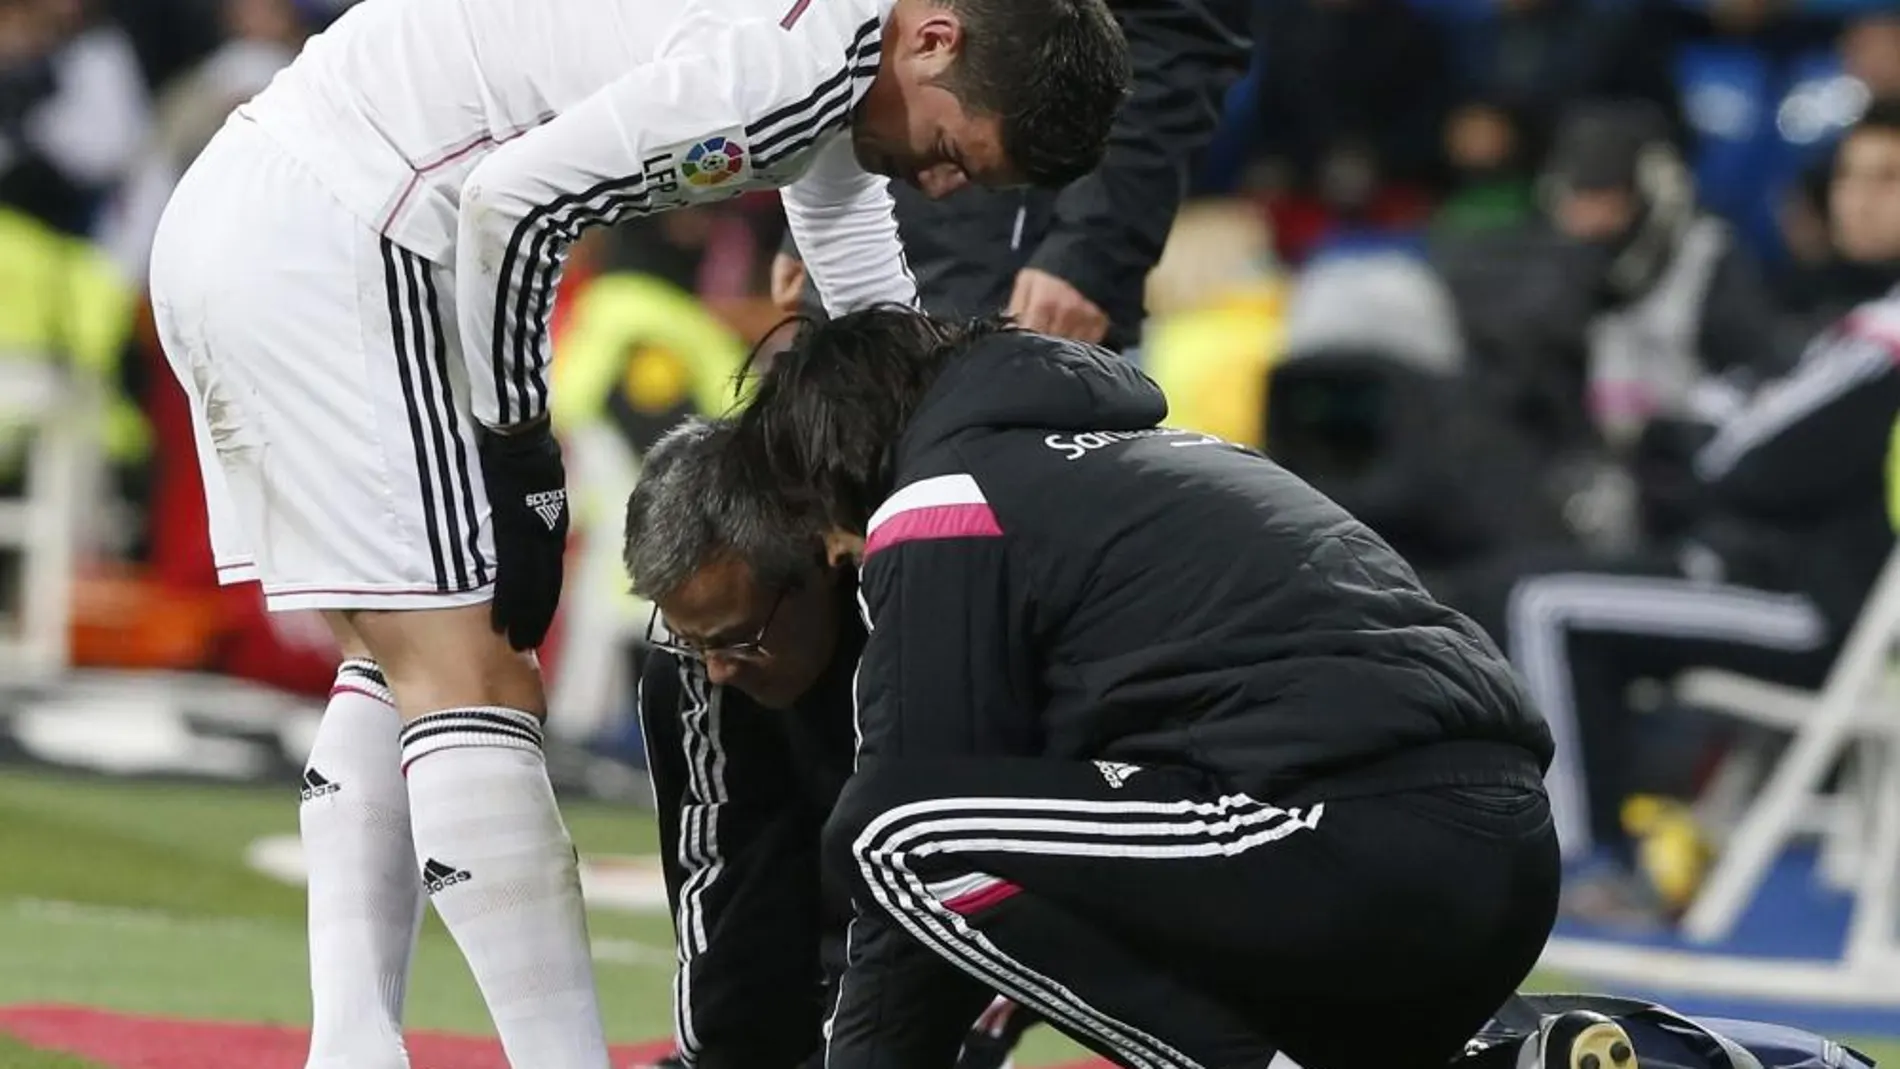 El centrocampista colombiano del Real Madrid James Rodríguez, tras lesionarse